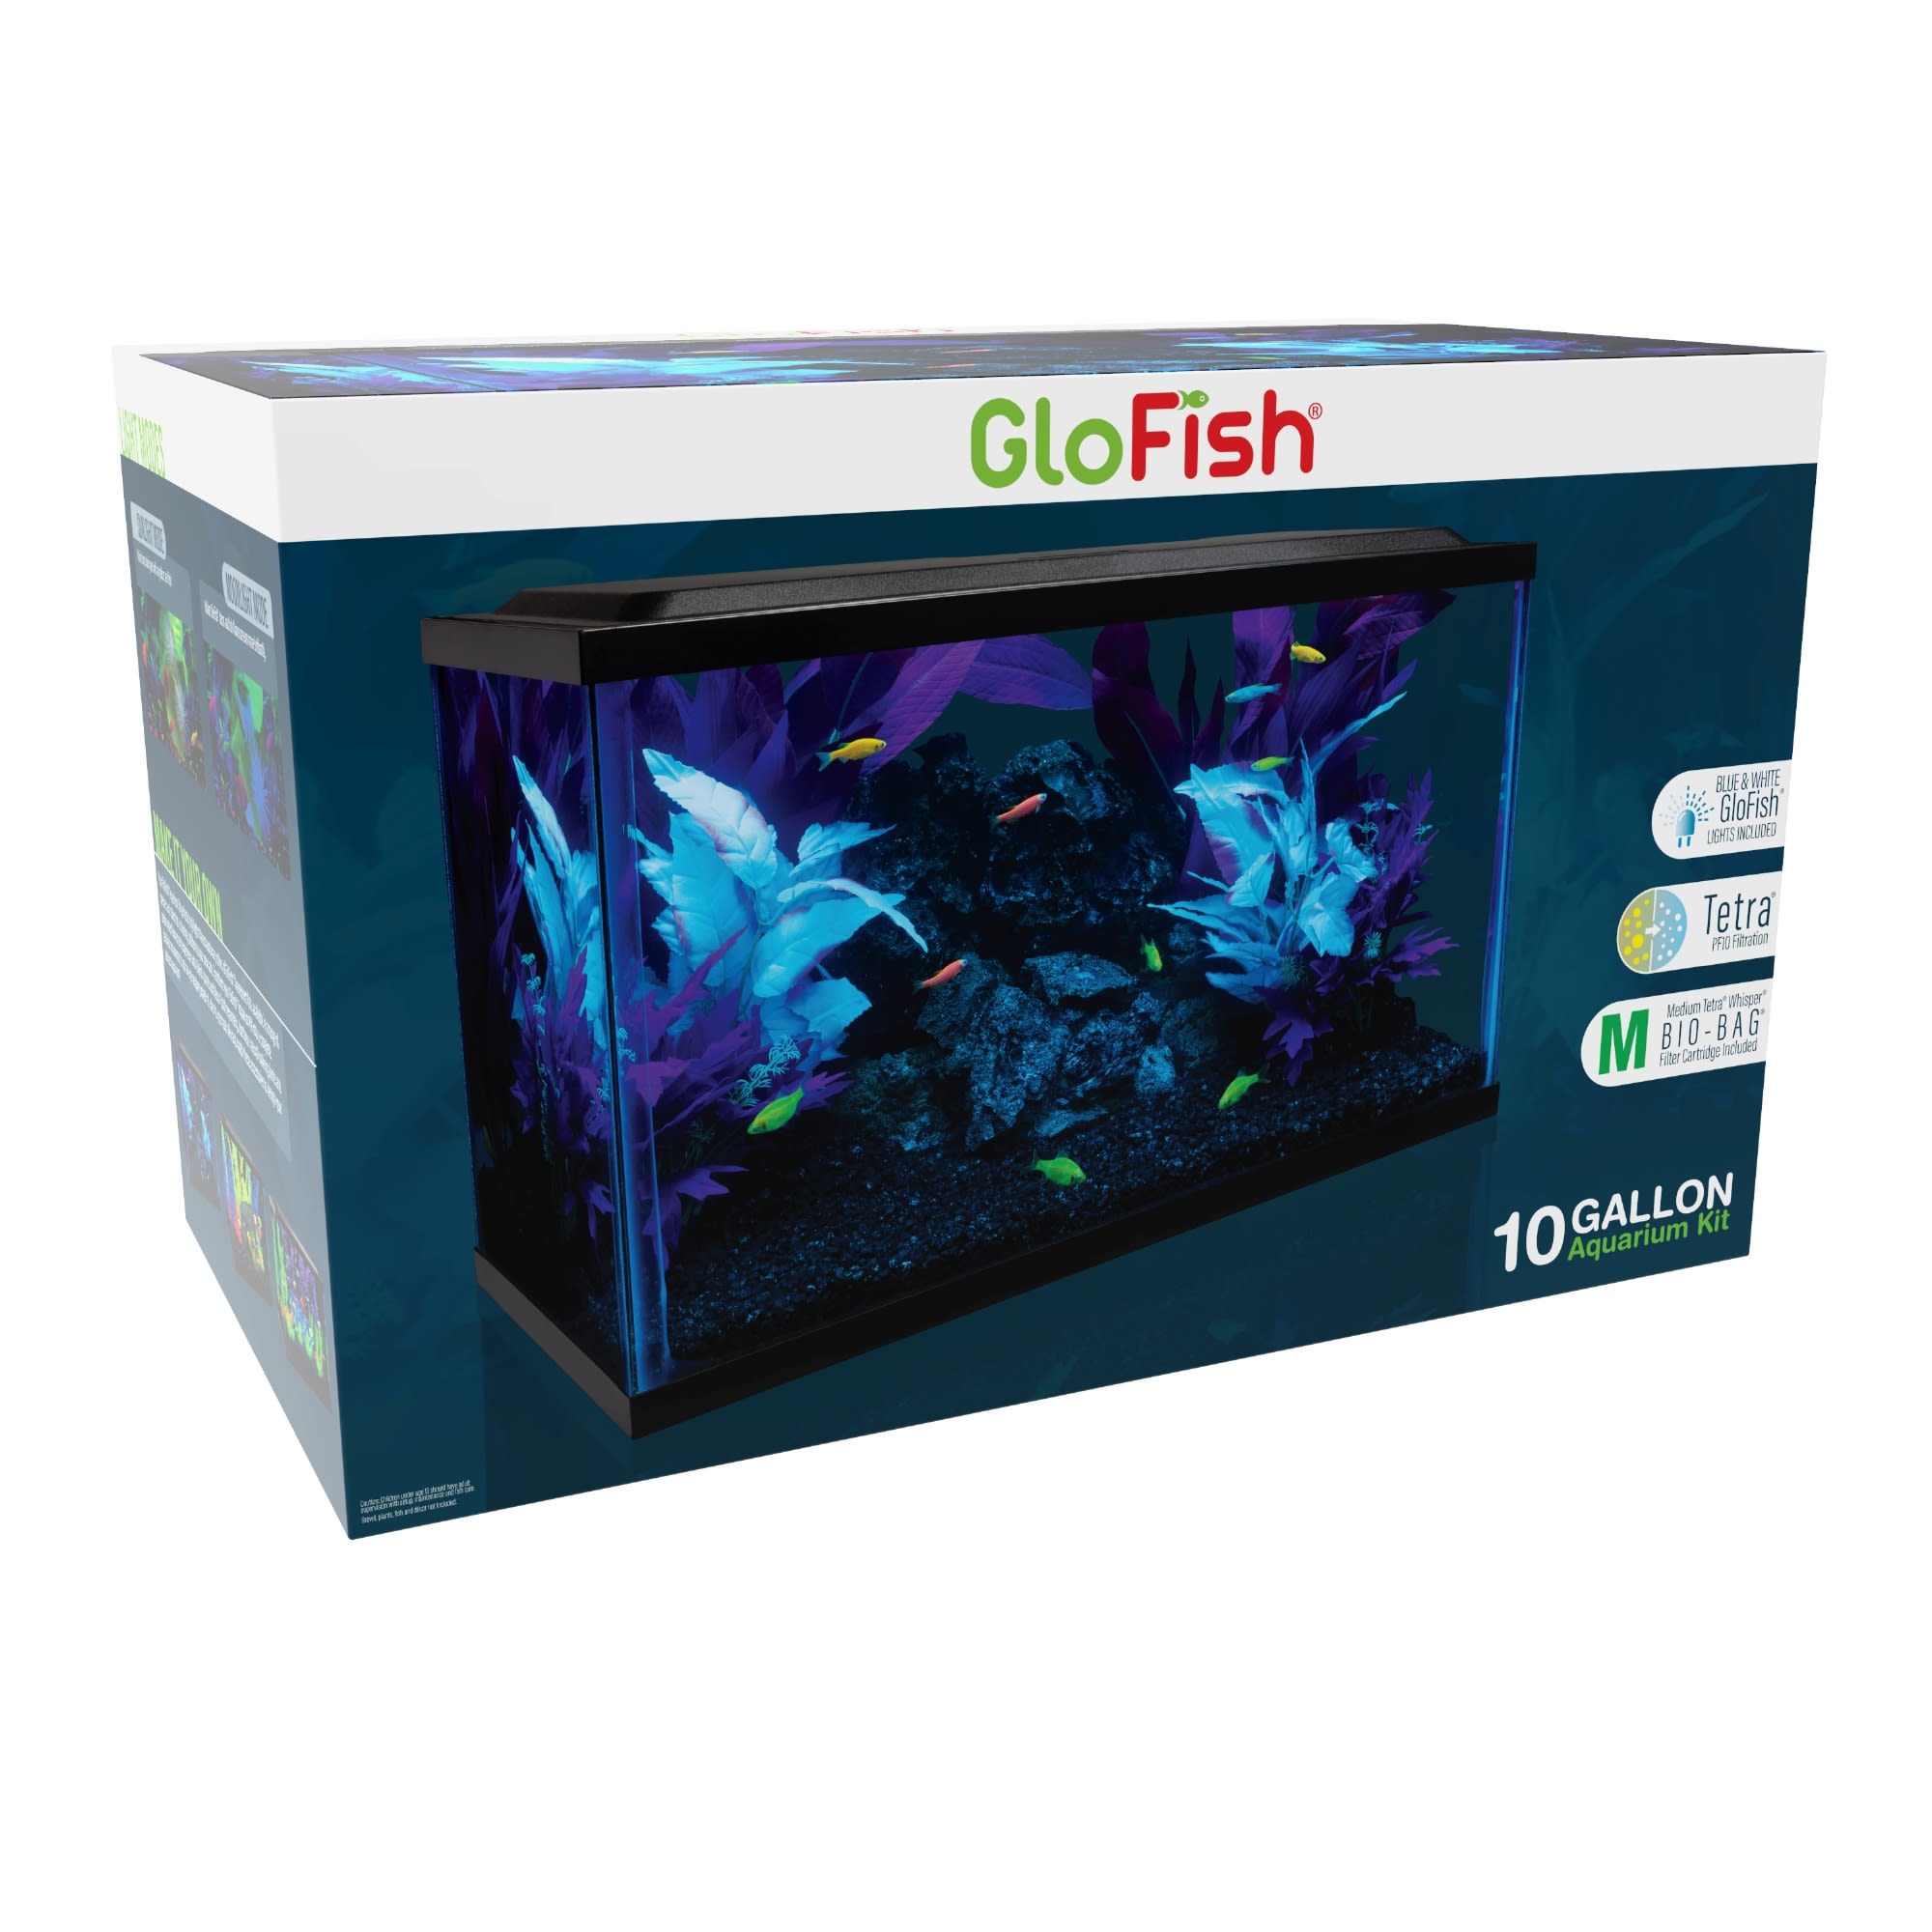 GloFish Glass Aquarium Kit 10 Gallon 